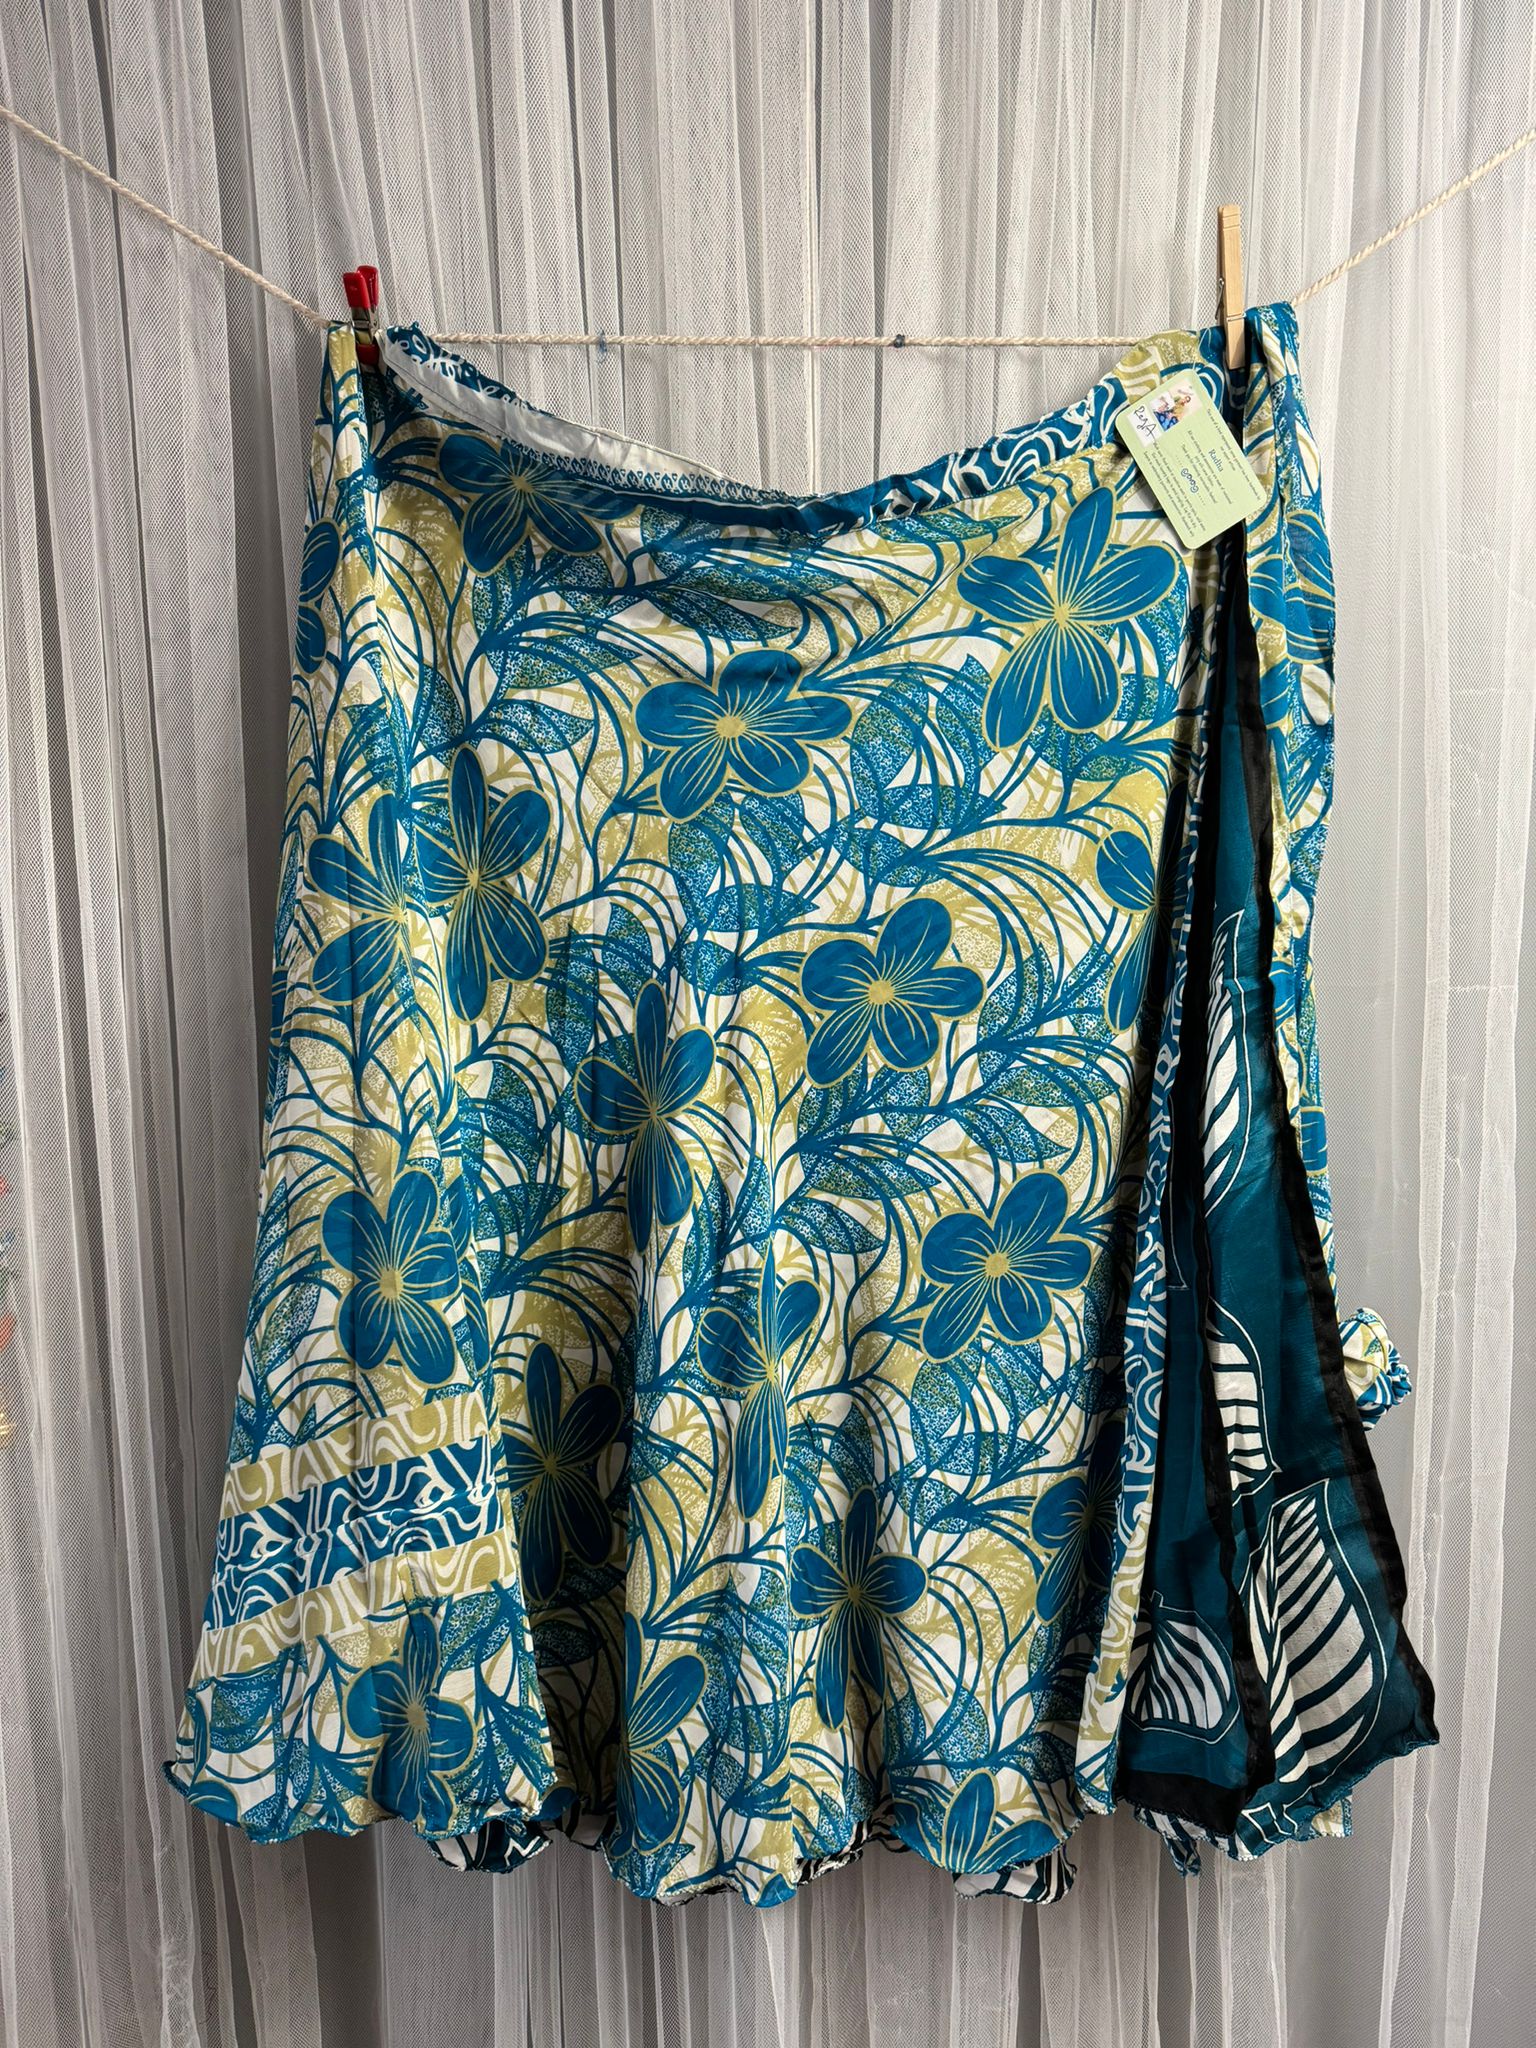 Festive Regular Ankle -FS001 - Rangeelaa- Fairtrade Sustainable Women's Clothingsaree wrap skirts